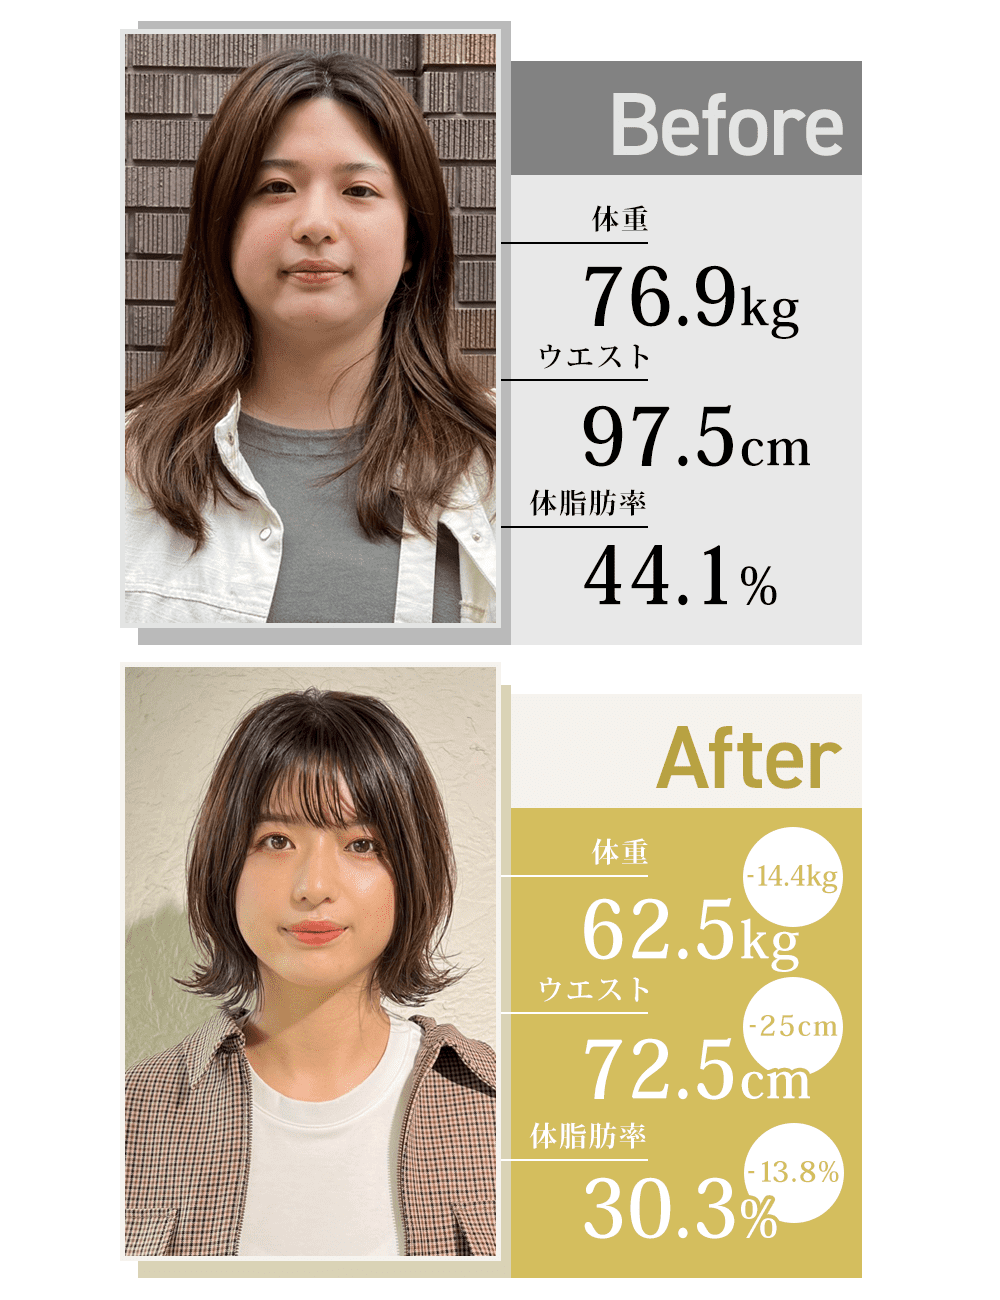 オンラインパーソナルで体重76kgから-14.4kgダイエットに成功した女性のビフォーアフター詳細